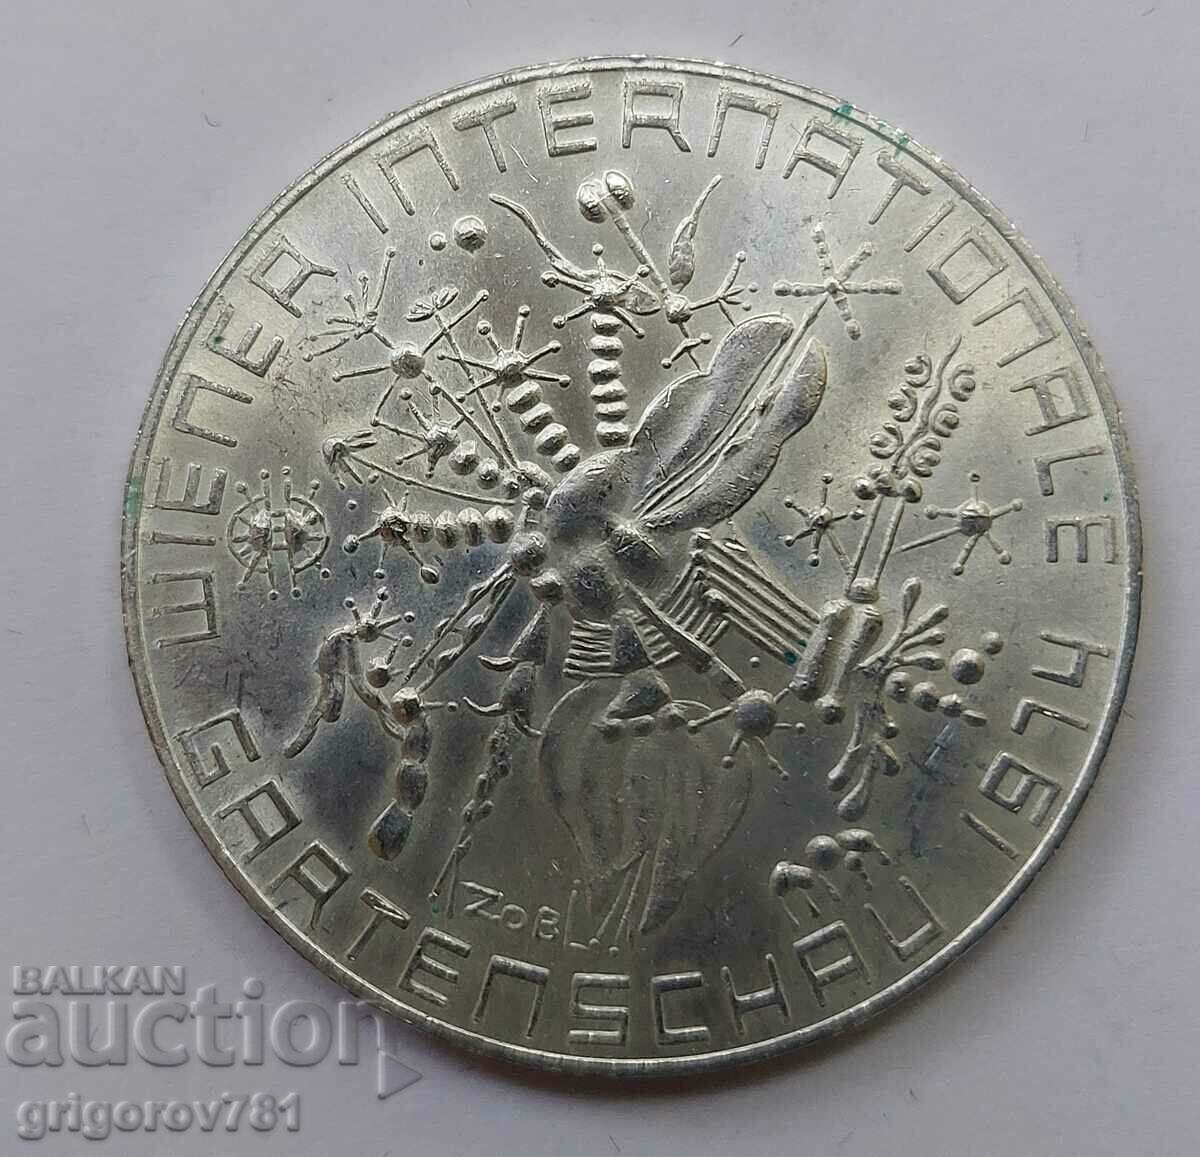 50 Shilling Silver Αυστρία 1974 - Ασημένιο νόμισμα #20